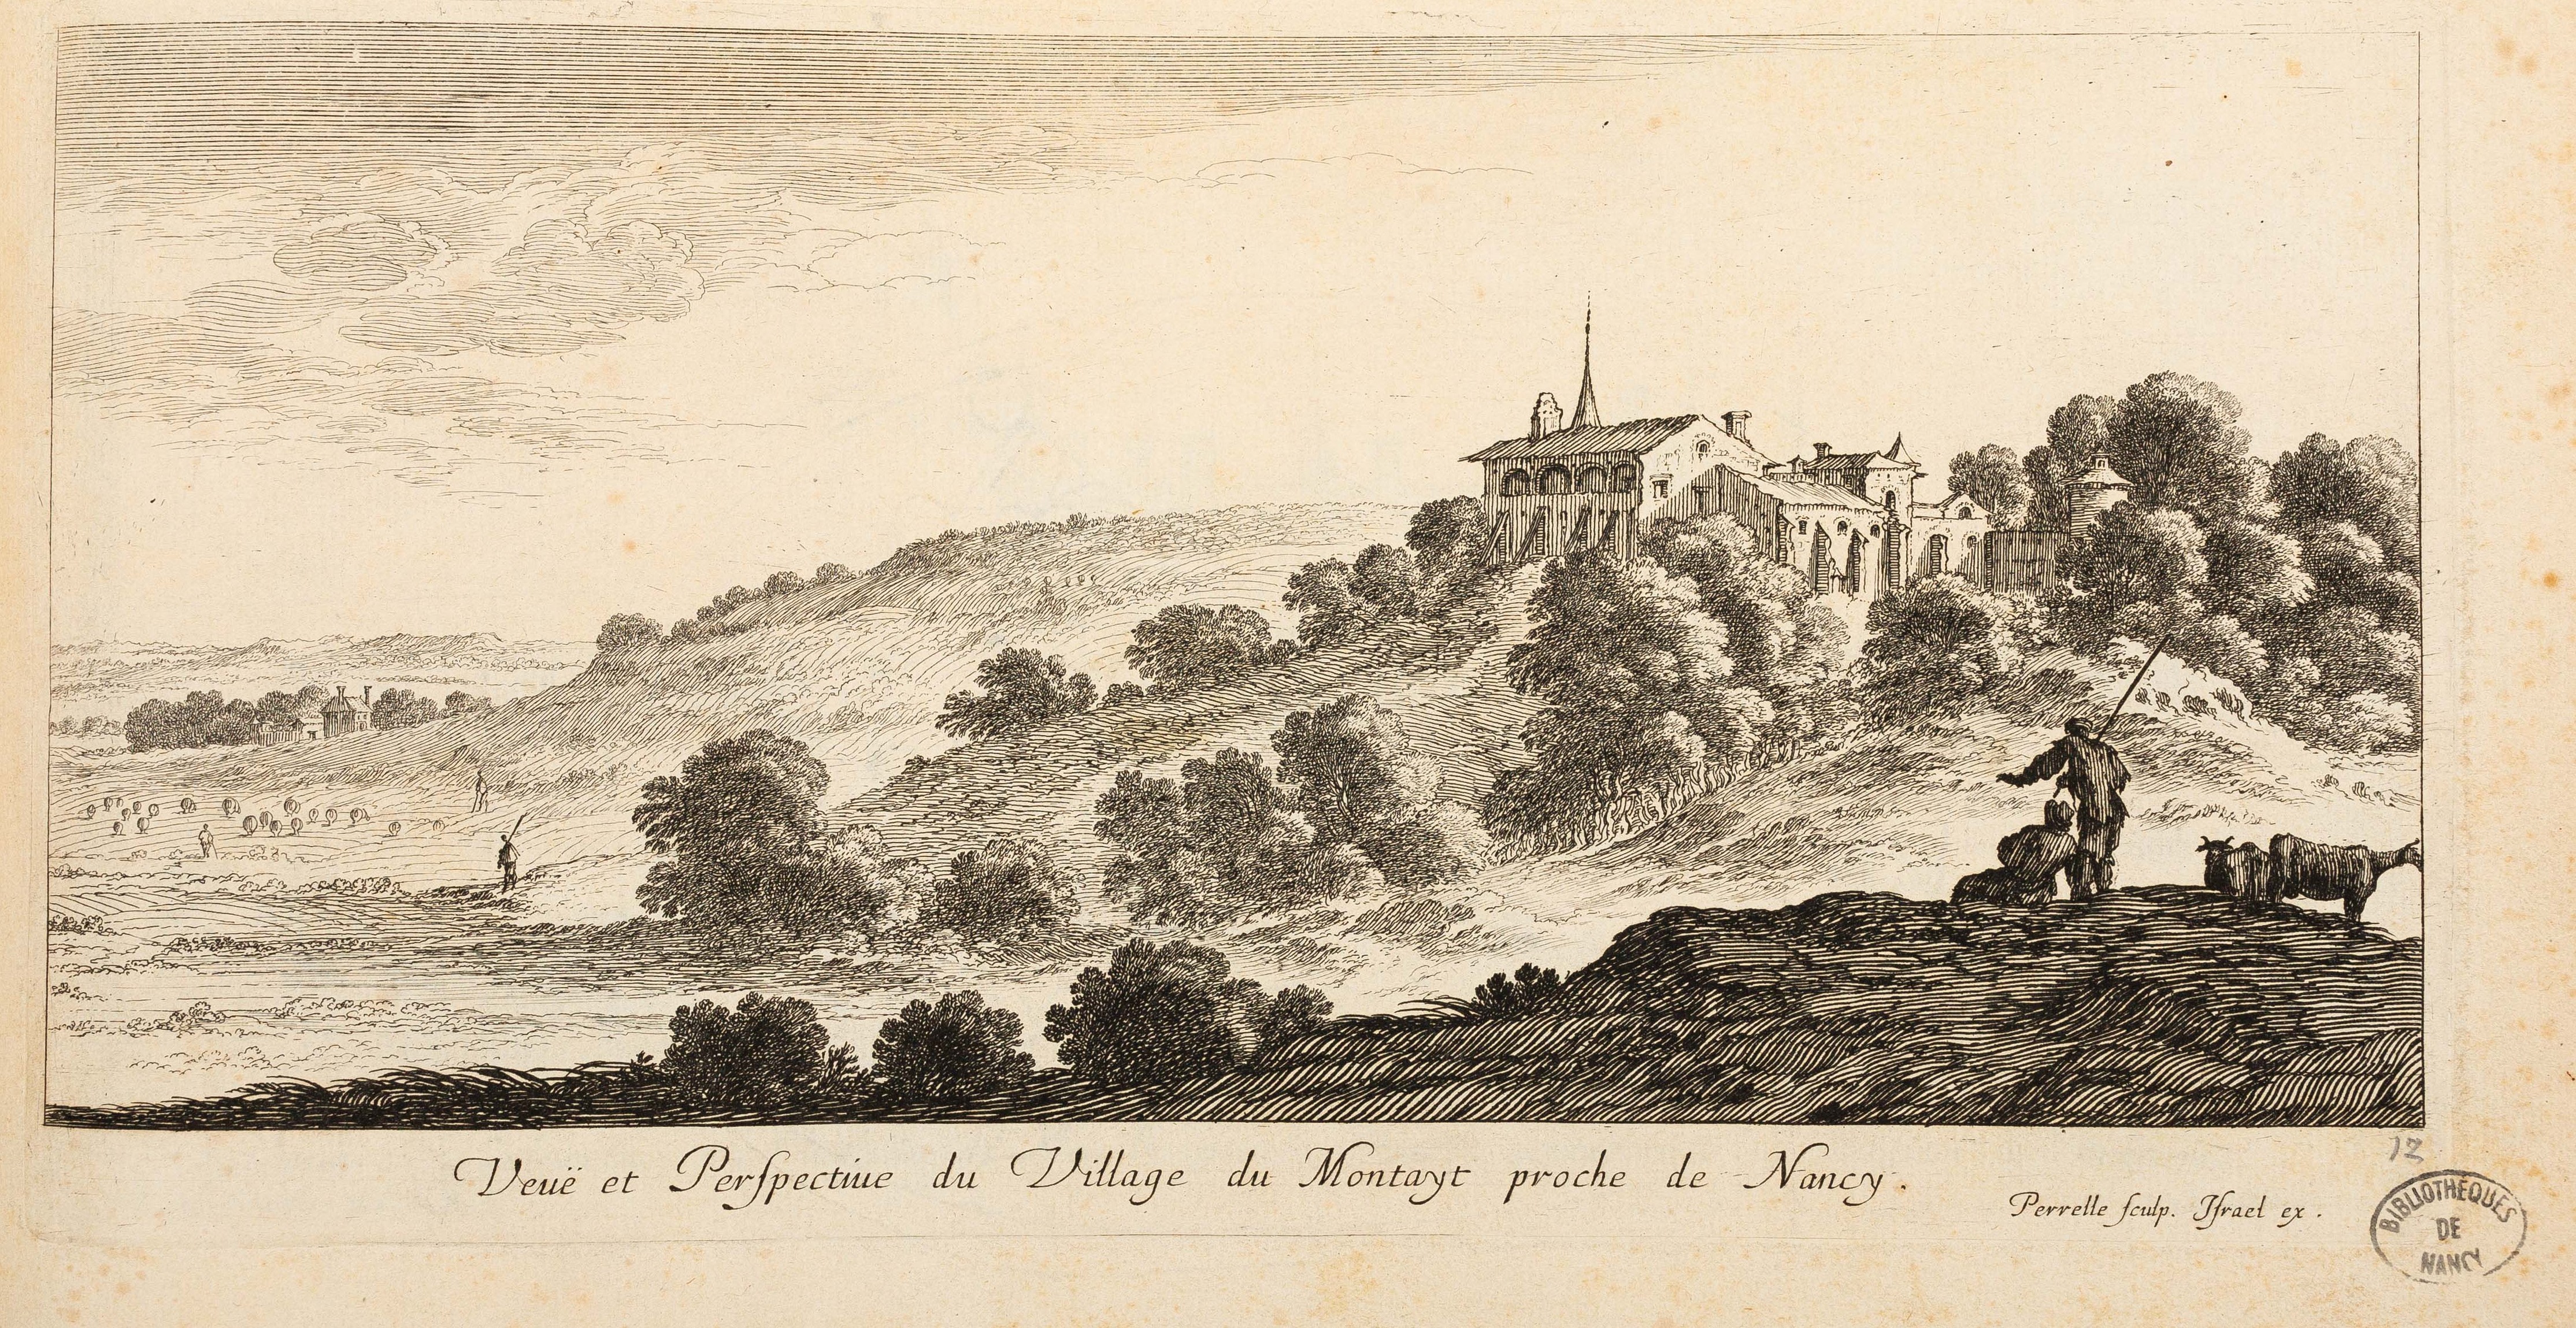 Israël Silvestre : Veuë et Perspective du Village du Montayt (Montet) proche de Nancy.